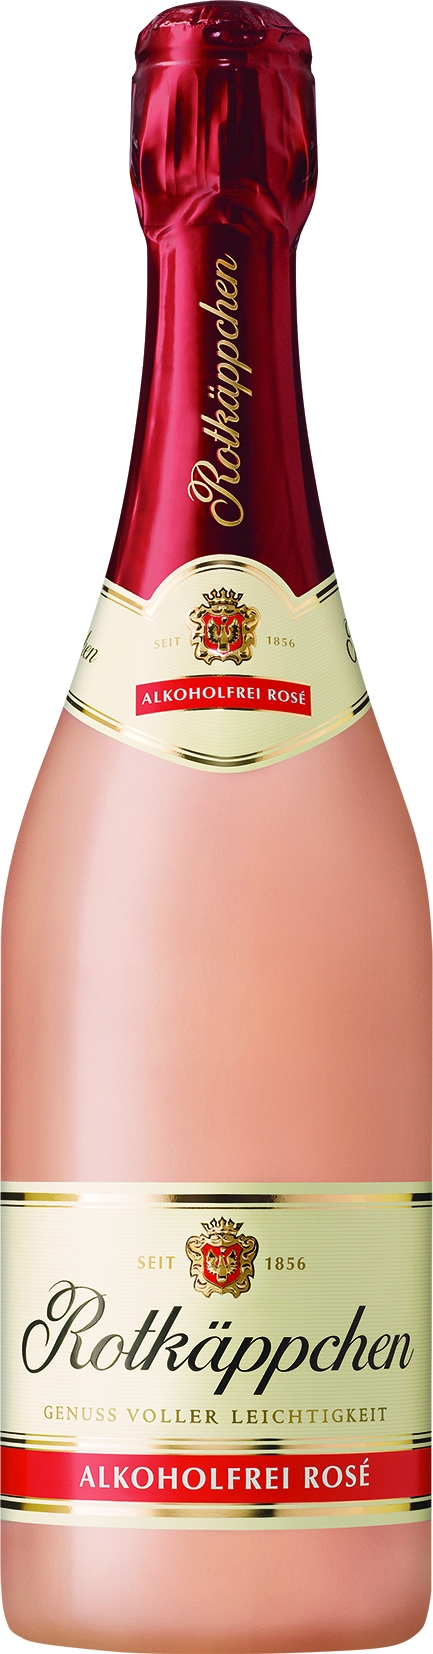 Rotkaeppchen Rosé, sparkl.wine, non-alc   